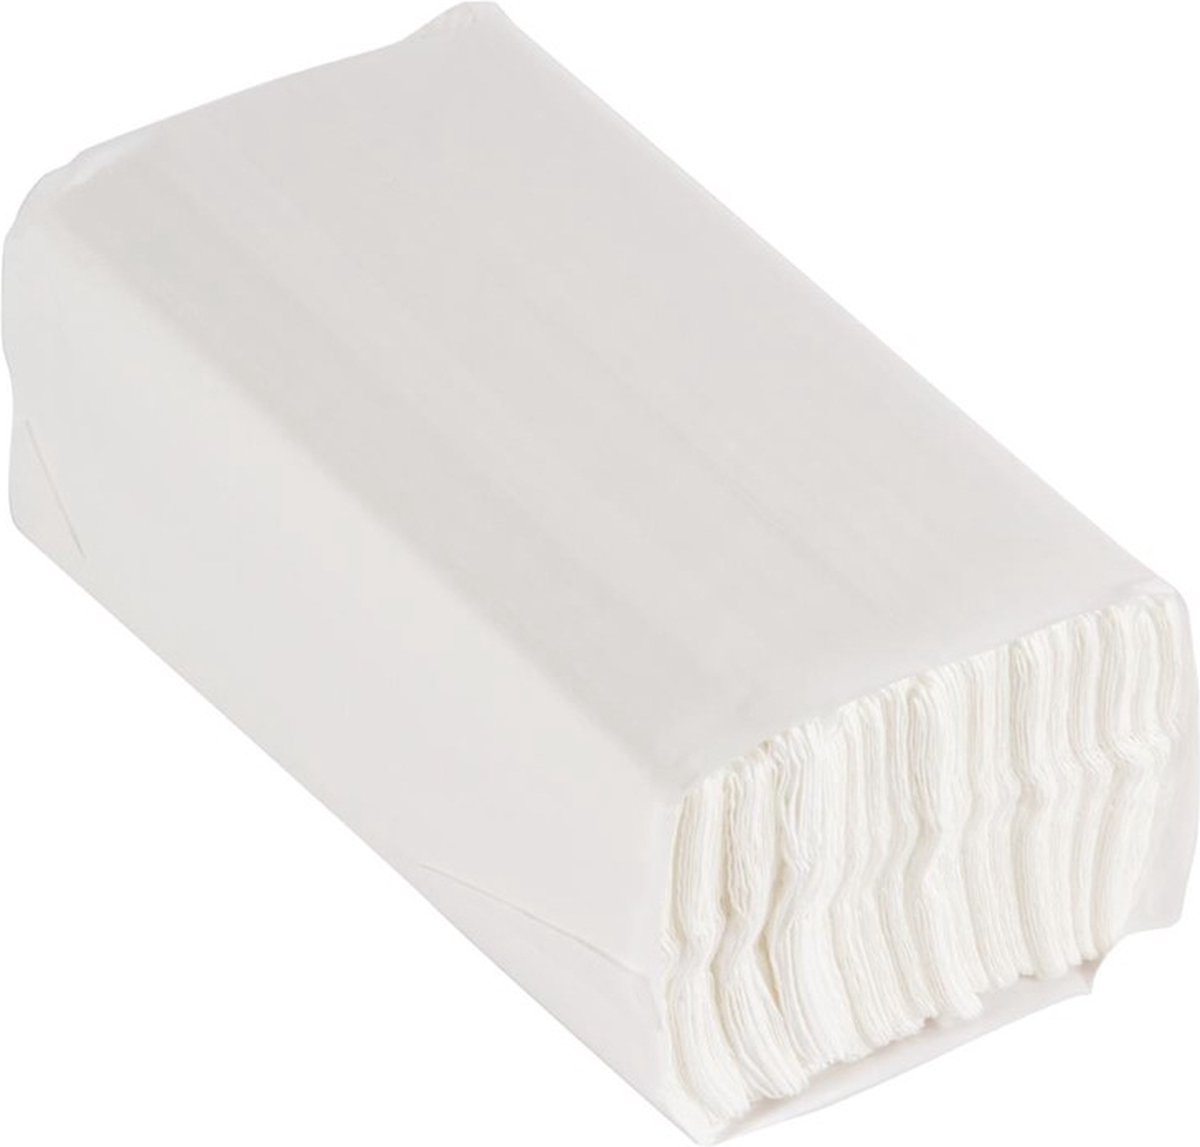 Jantex C-gevouwen handdoeken 2-laags wit